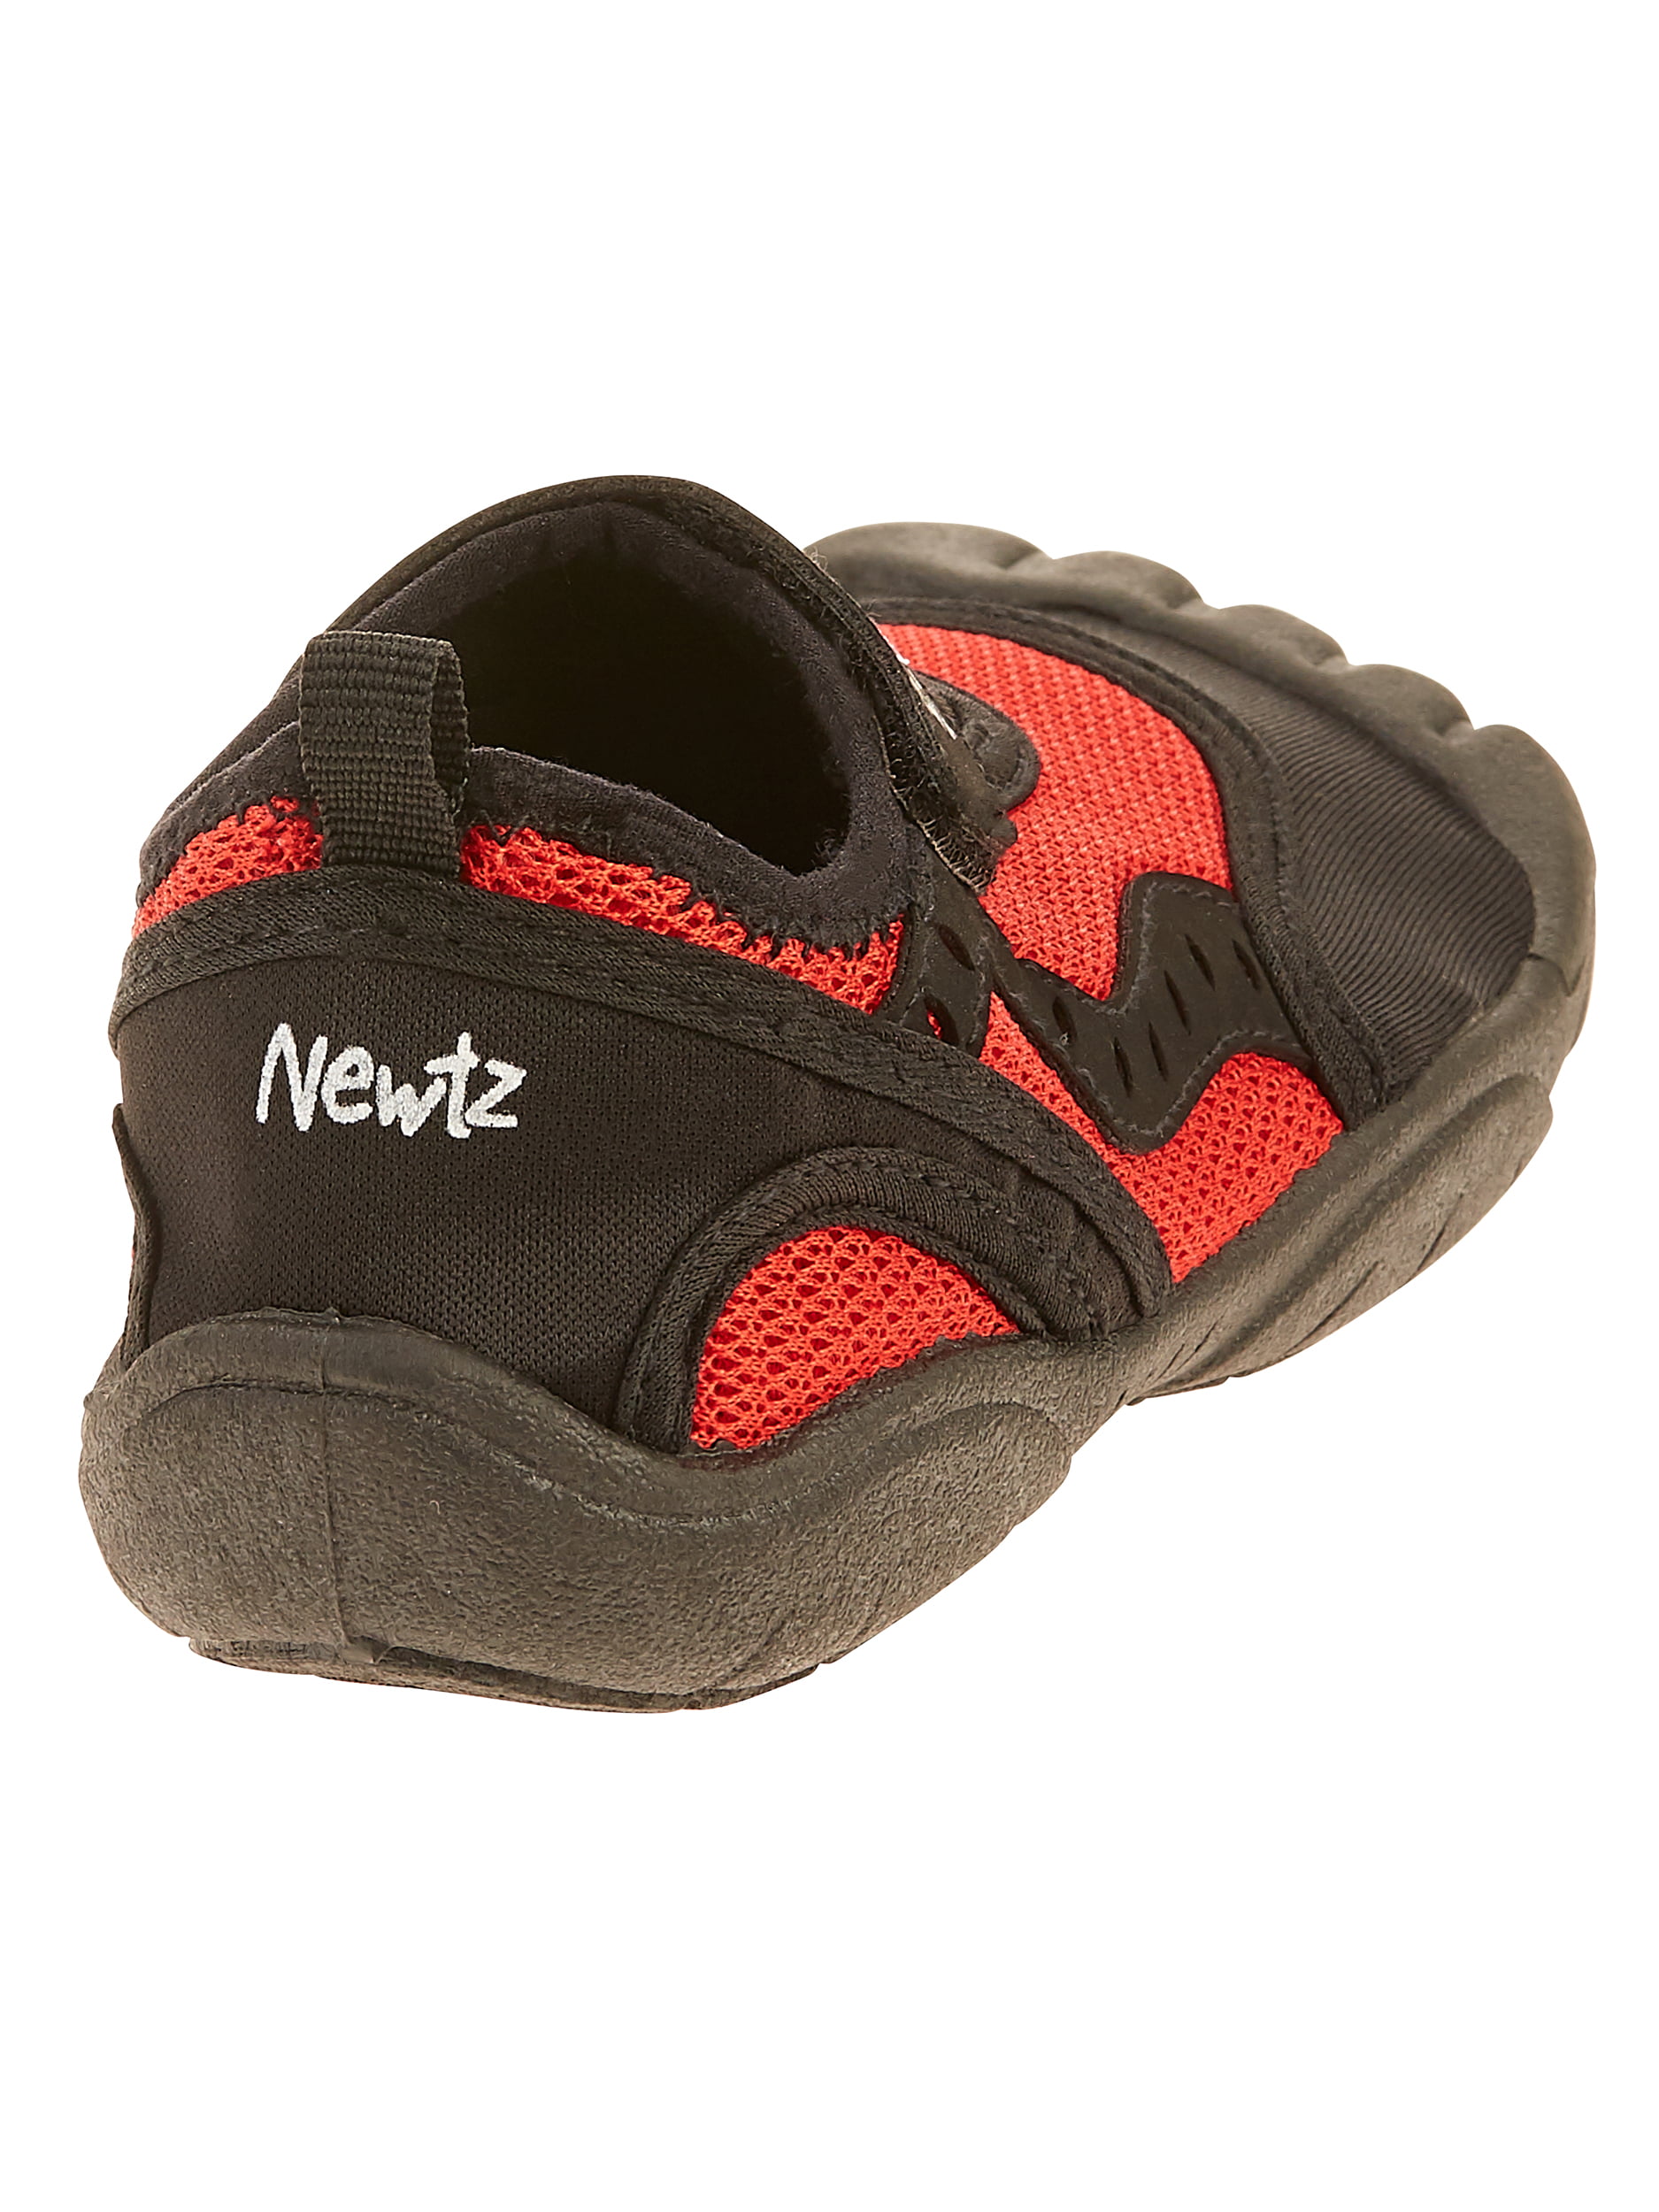 newtz water shoes walmart